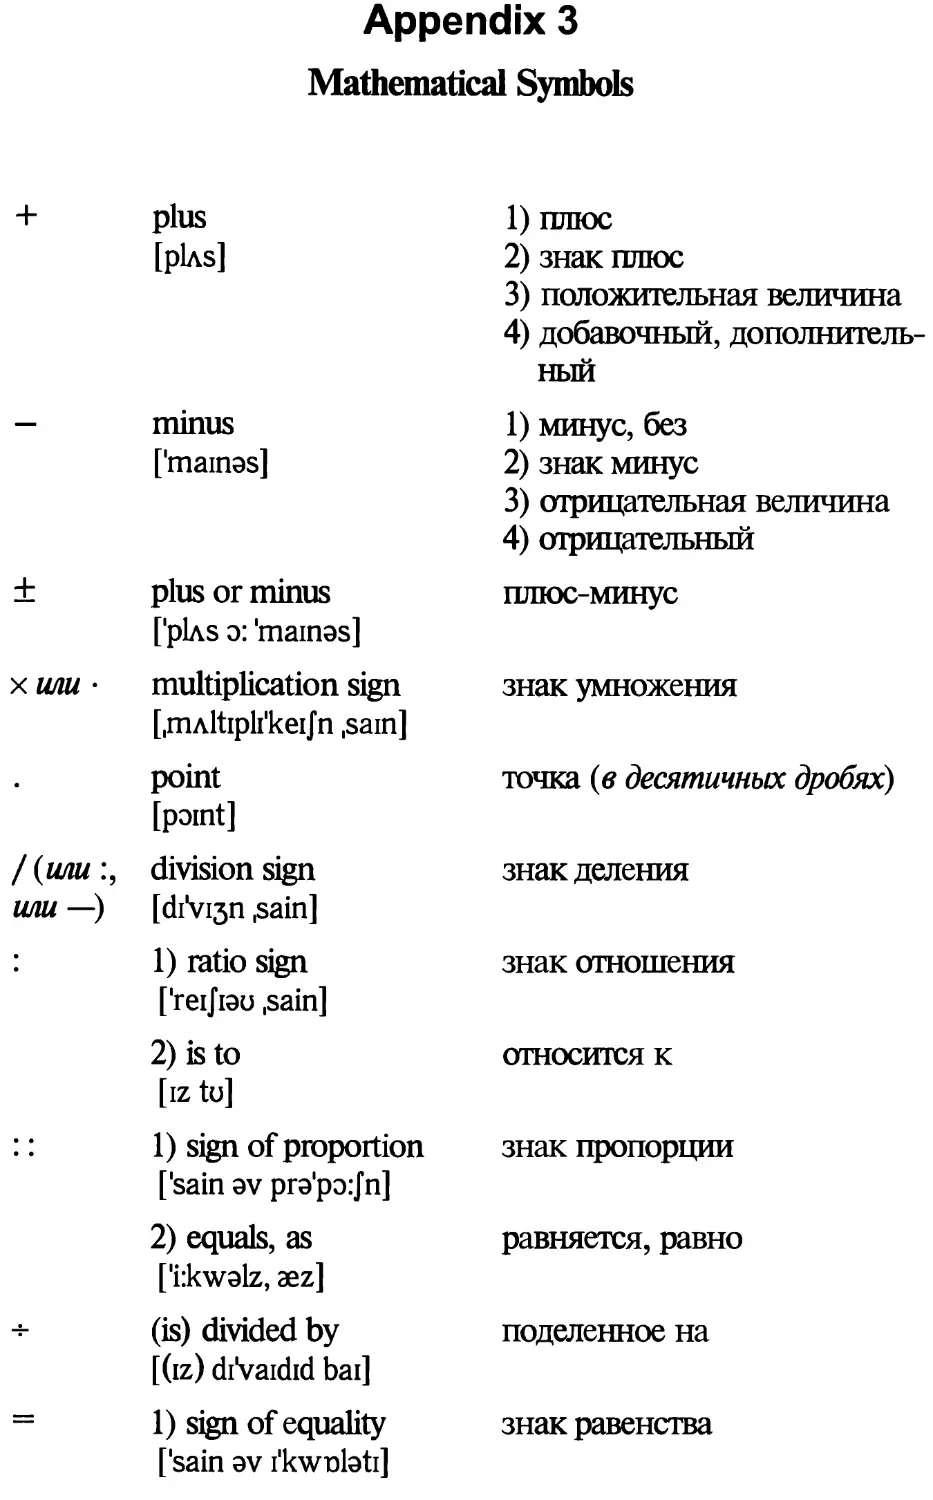 Appendix 3. Mathematical Symbols